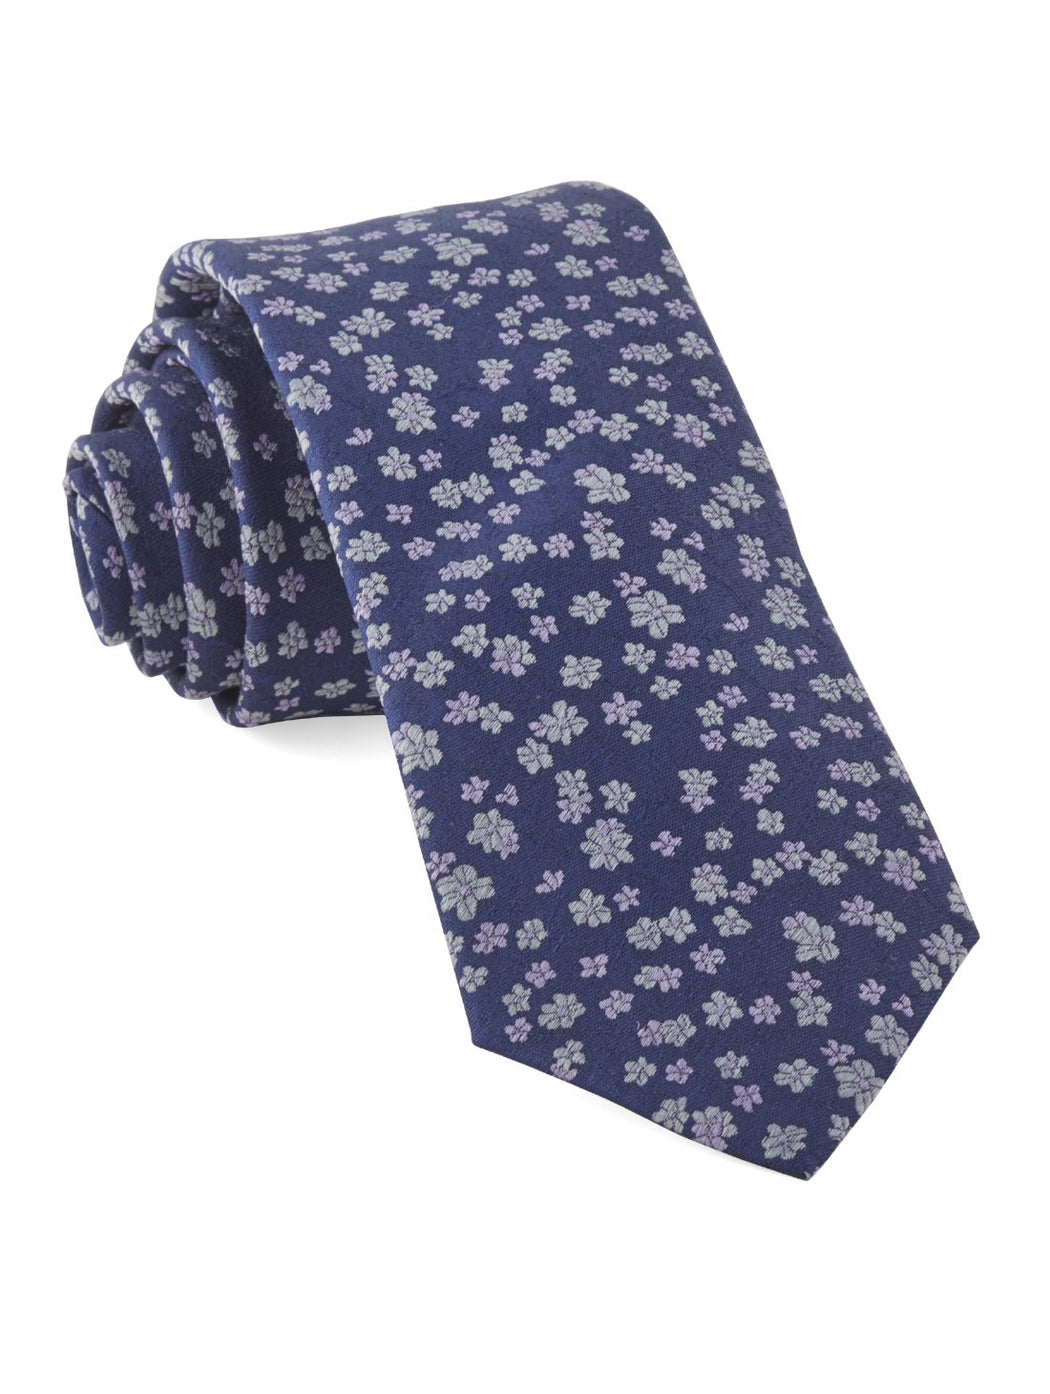 Free Fall Floral Lavender Tie | Silk Ties | Tie Bar